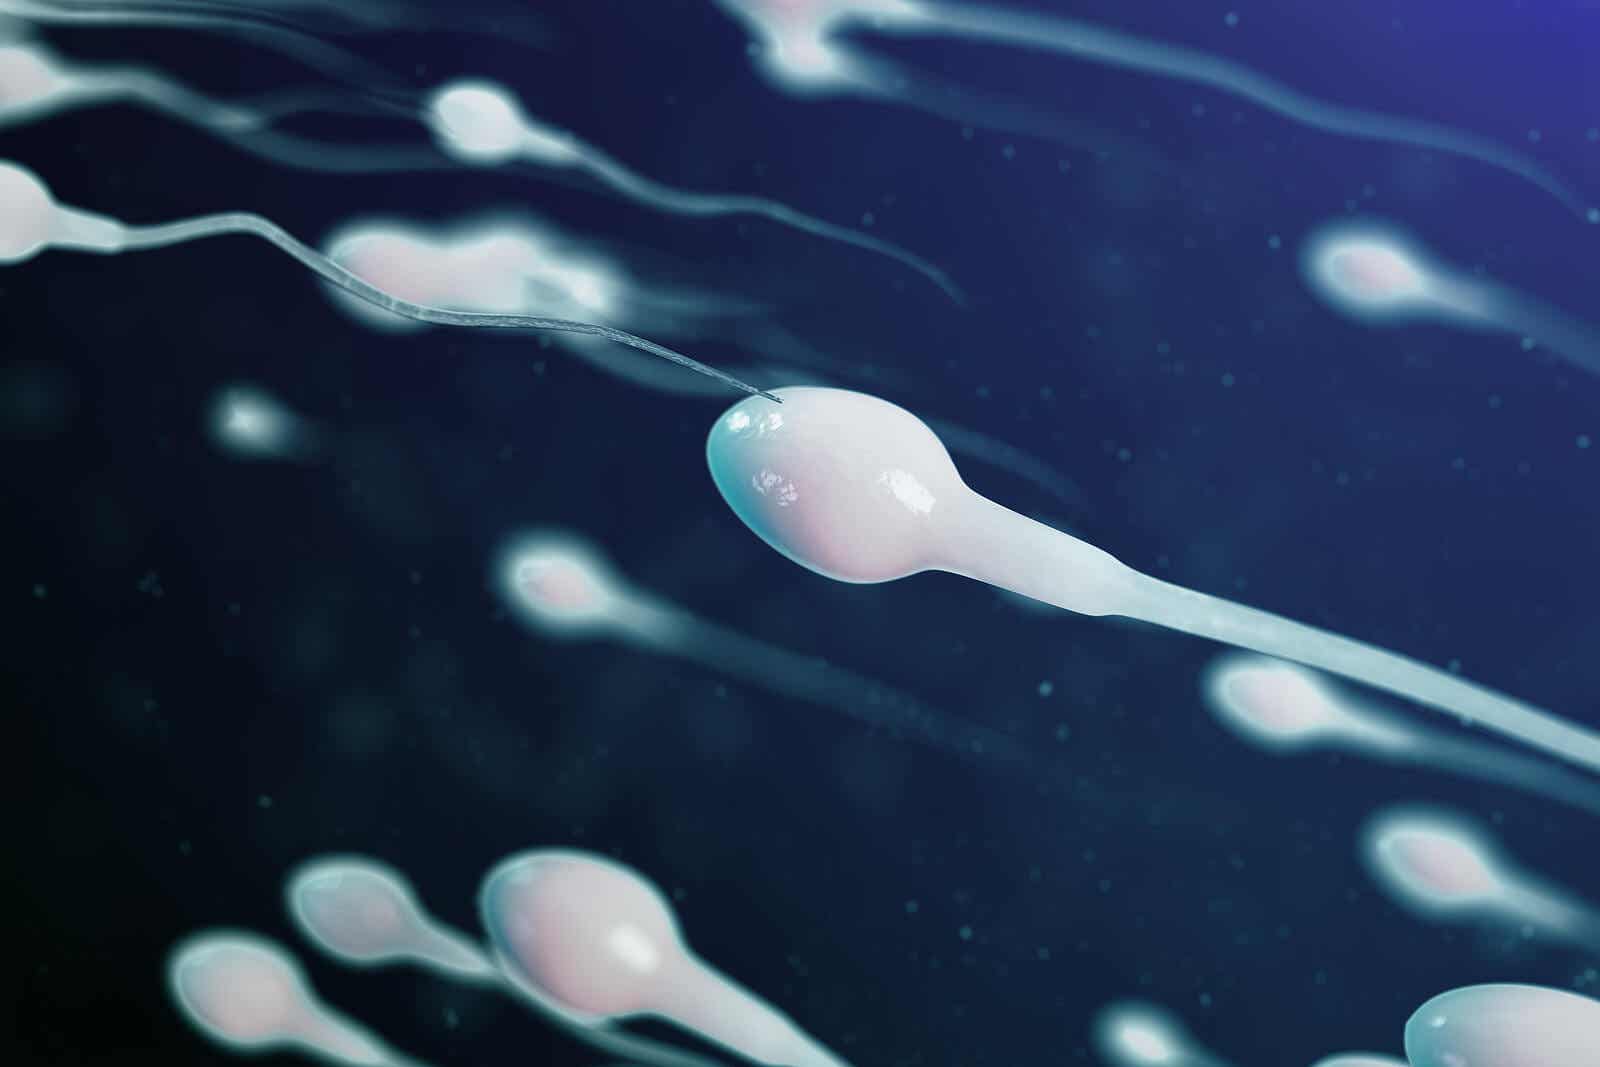 Semen and sperm